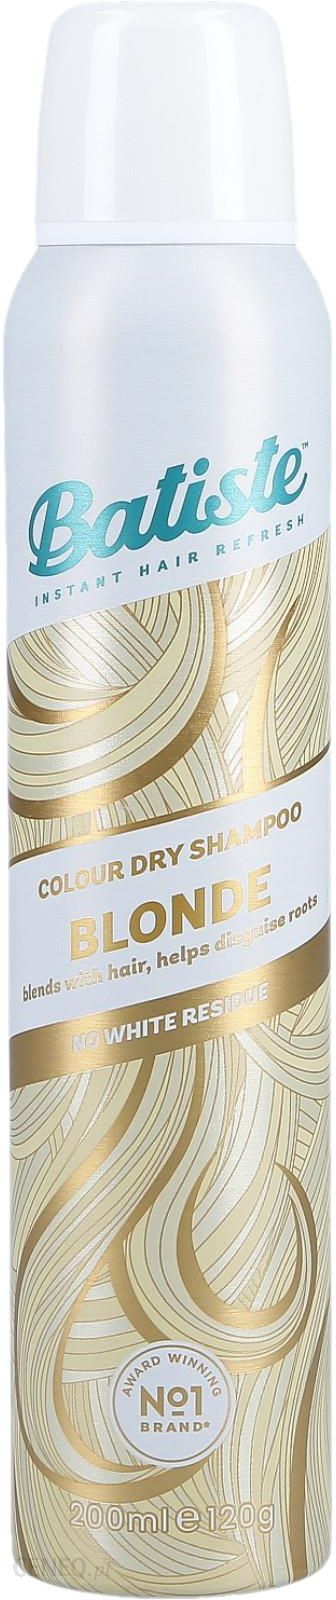 batiste.pl suchy szampon do włosów blond gdzie kupić